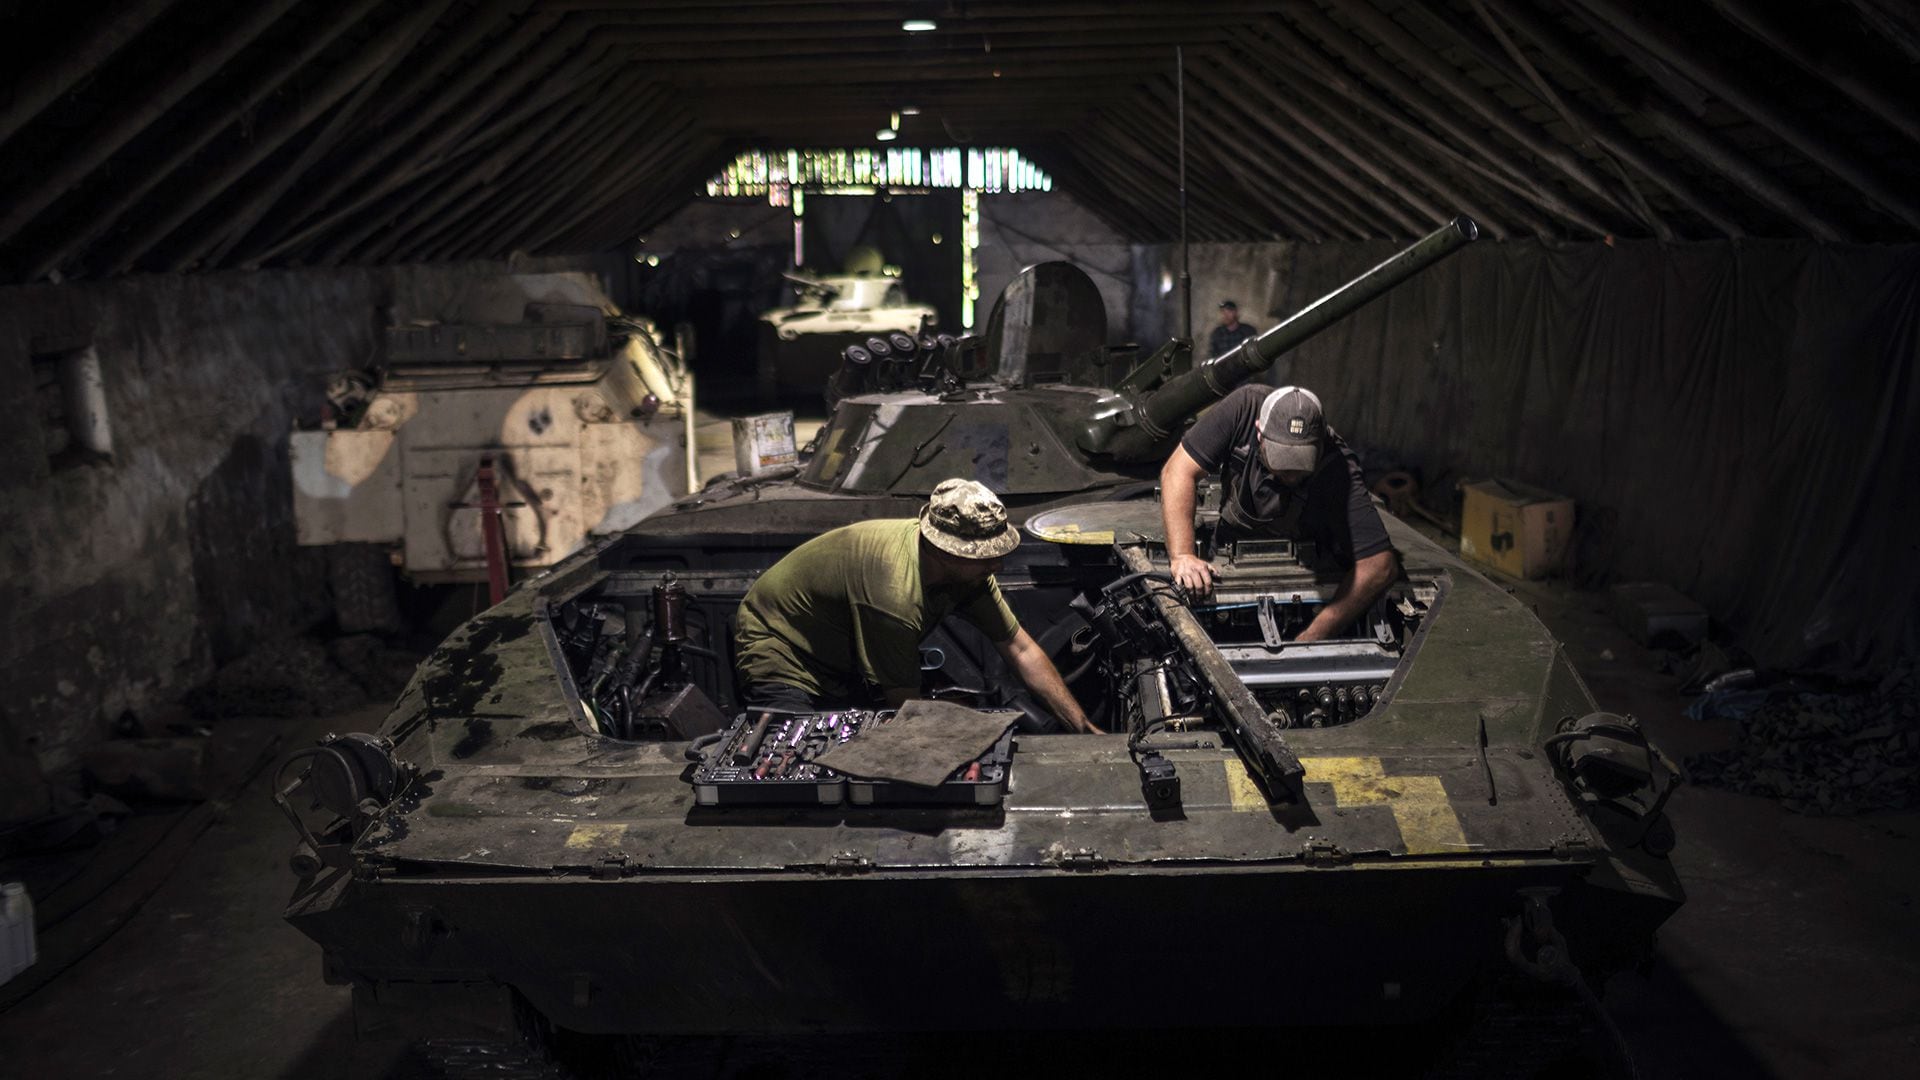 Reparación de un vehículo de combate de infantería de la era soviética. Las fuerzas ucranianas se han visto obligadas a utilizar armamento ruso capturado (Diego Ibarra Sanchez/The New York Times)